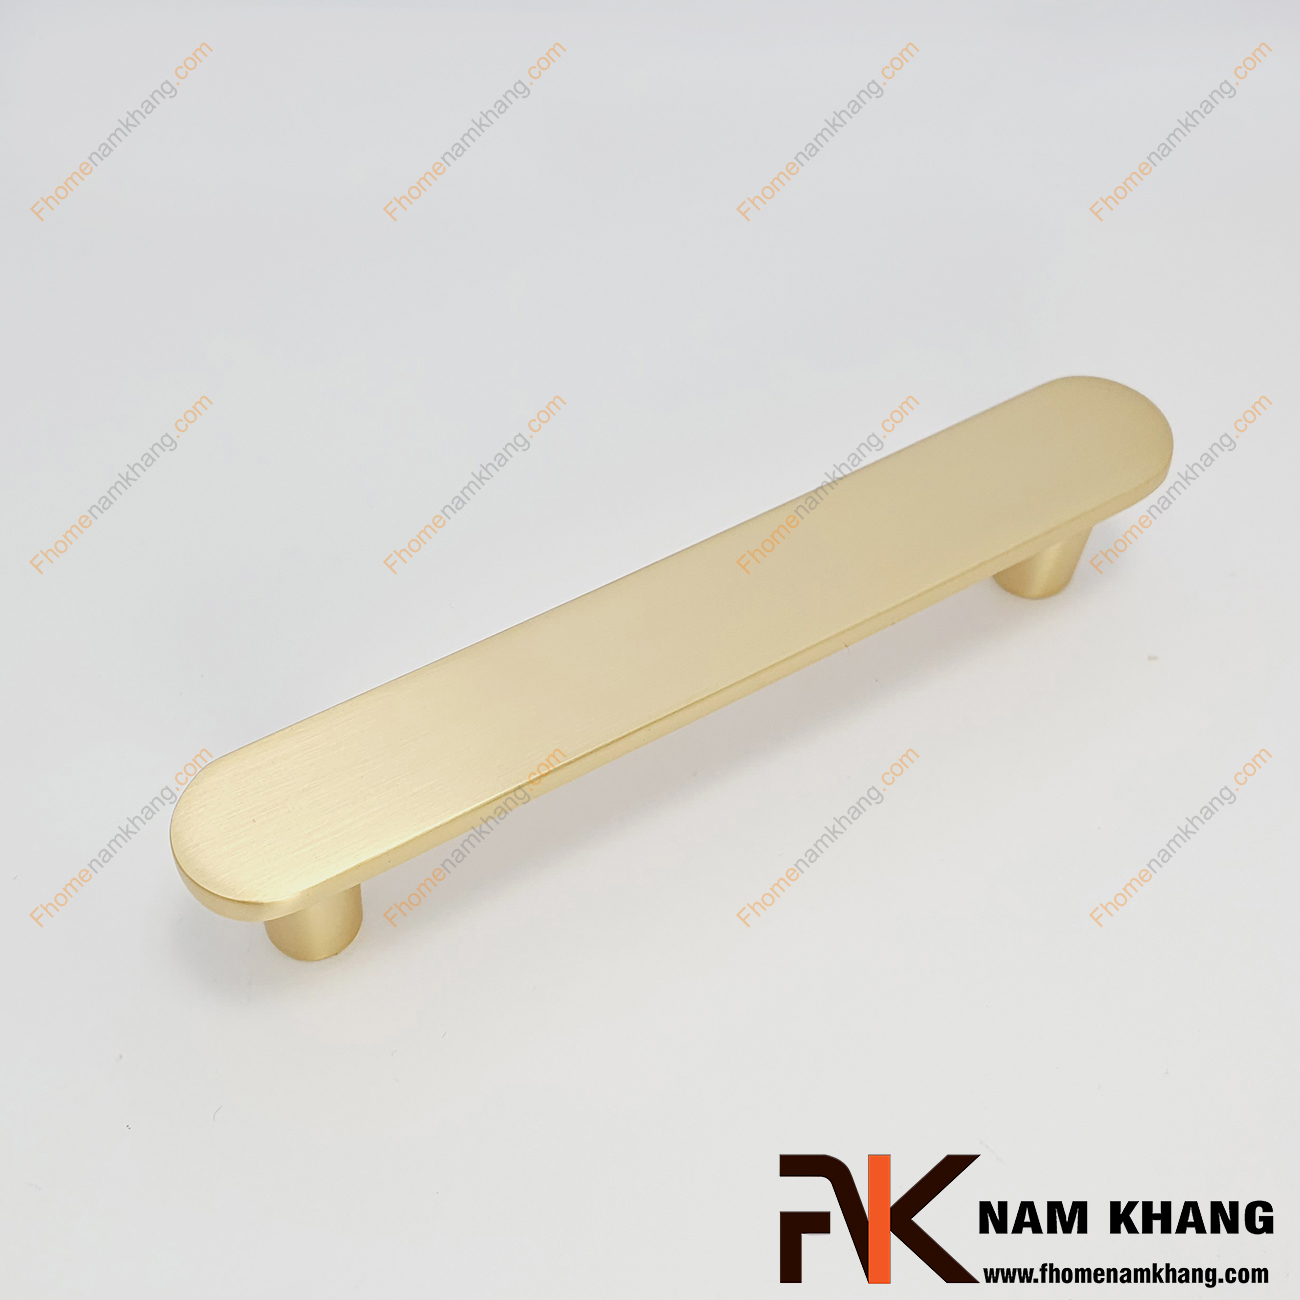 Tay nắm tủ dạng thanh màu vàng mờ NK455T-VM, thiết kế dạng tay nắm được bo tròn màu vàng mờ.